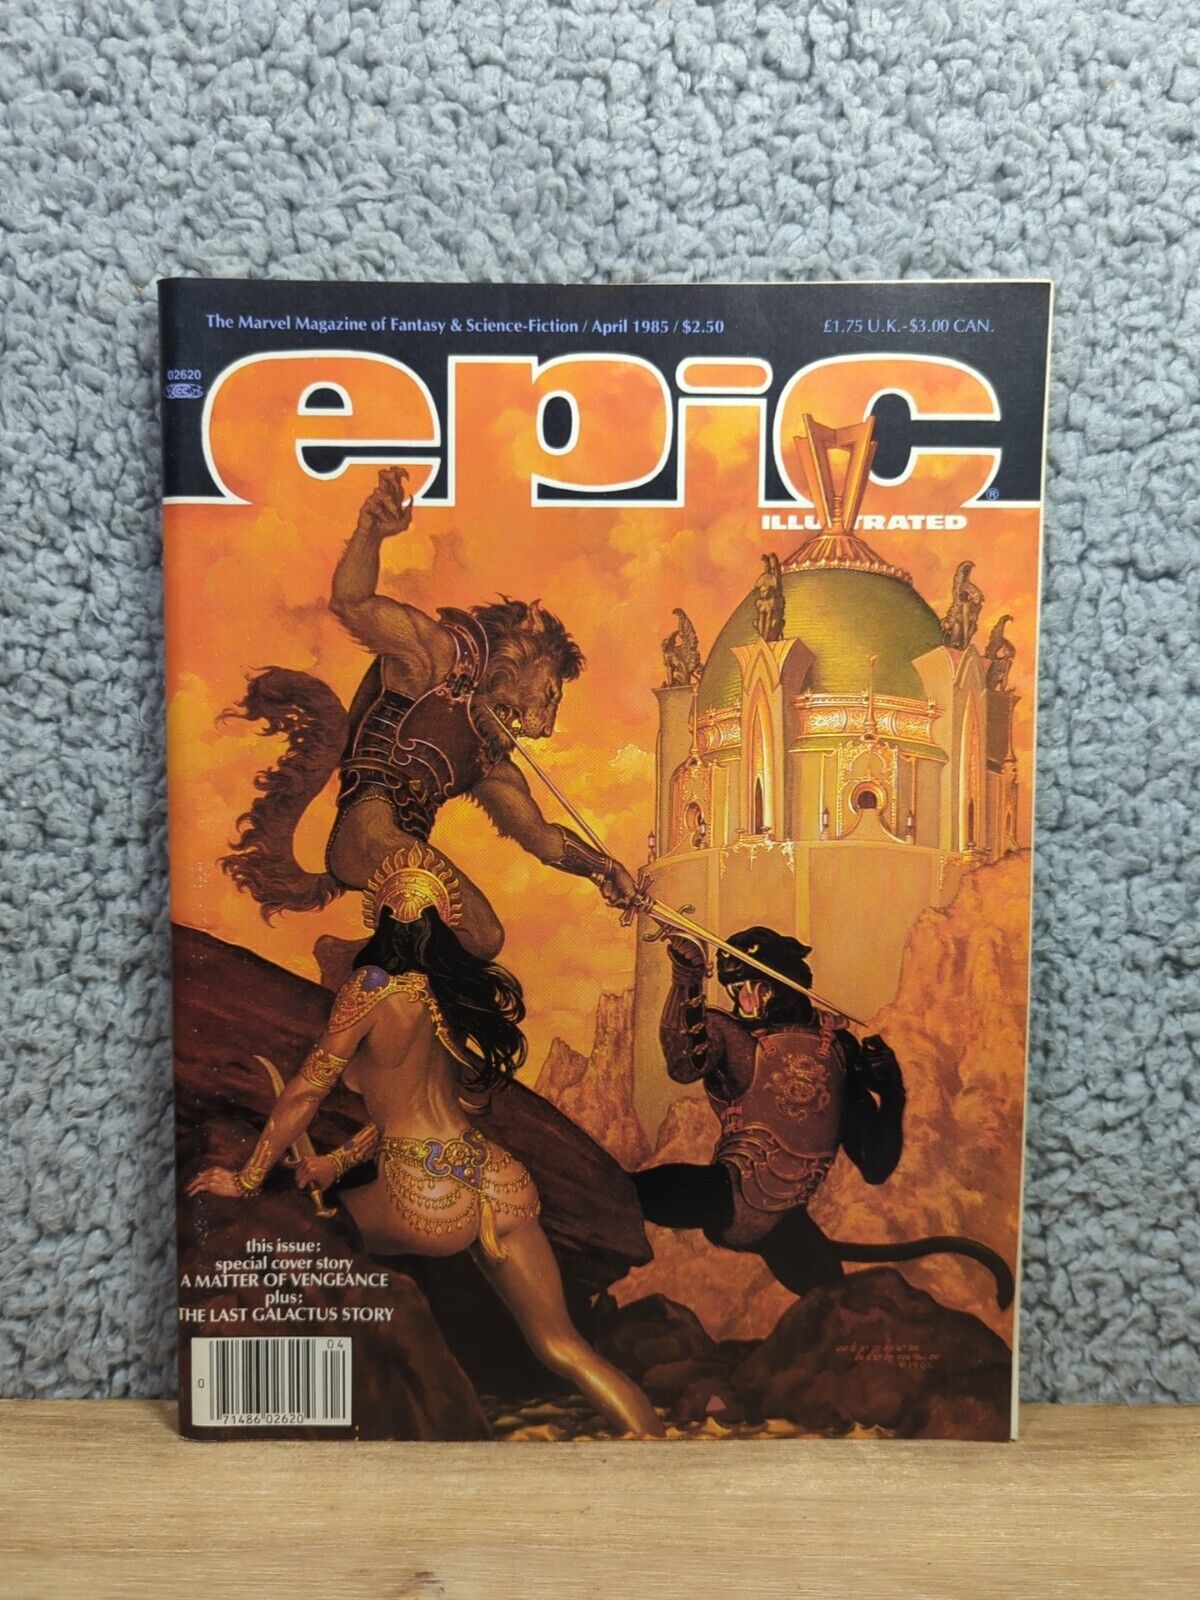 Epic Illustrated Vol. 1 #29 Marvel Magazine April 1985 Galactus